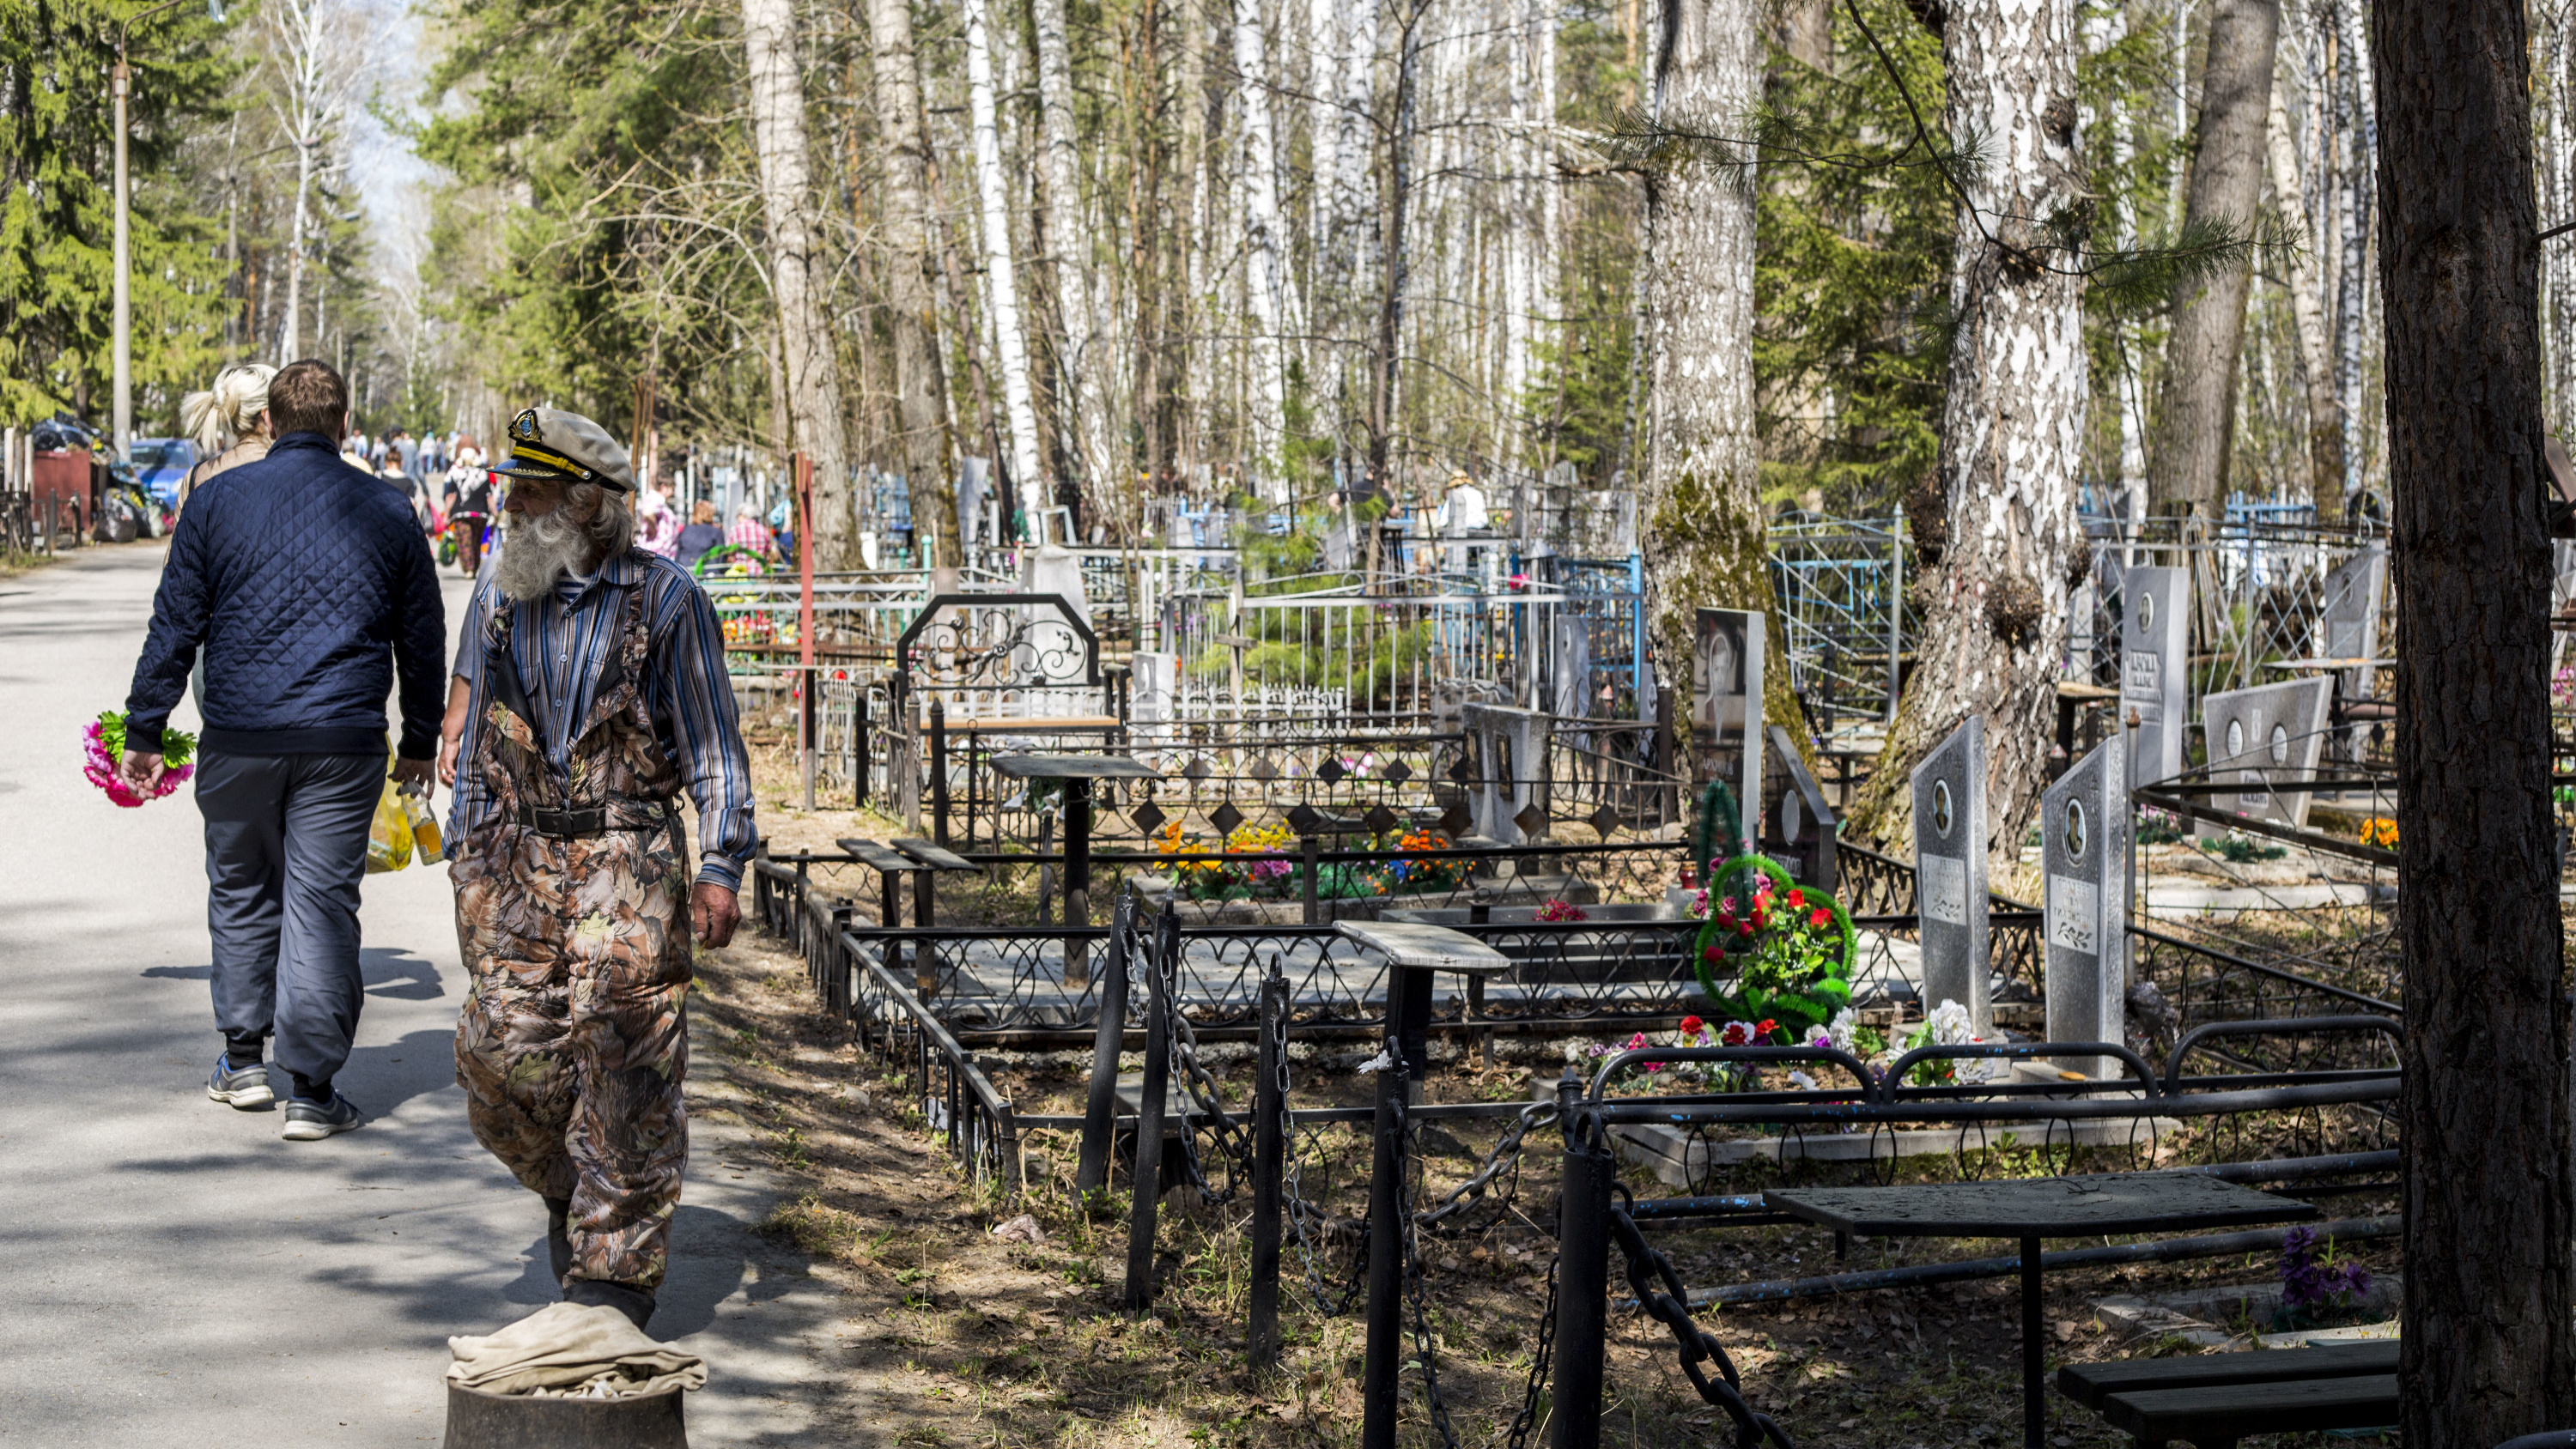 Кто владеет московскими кладбищами. Расследование Ивана Голунова